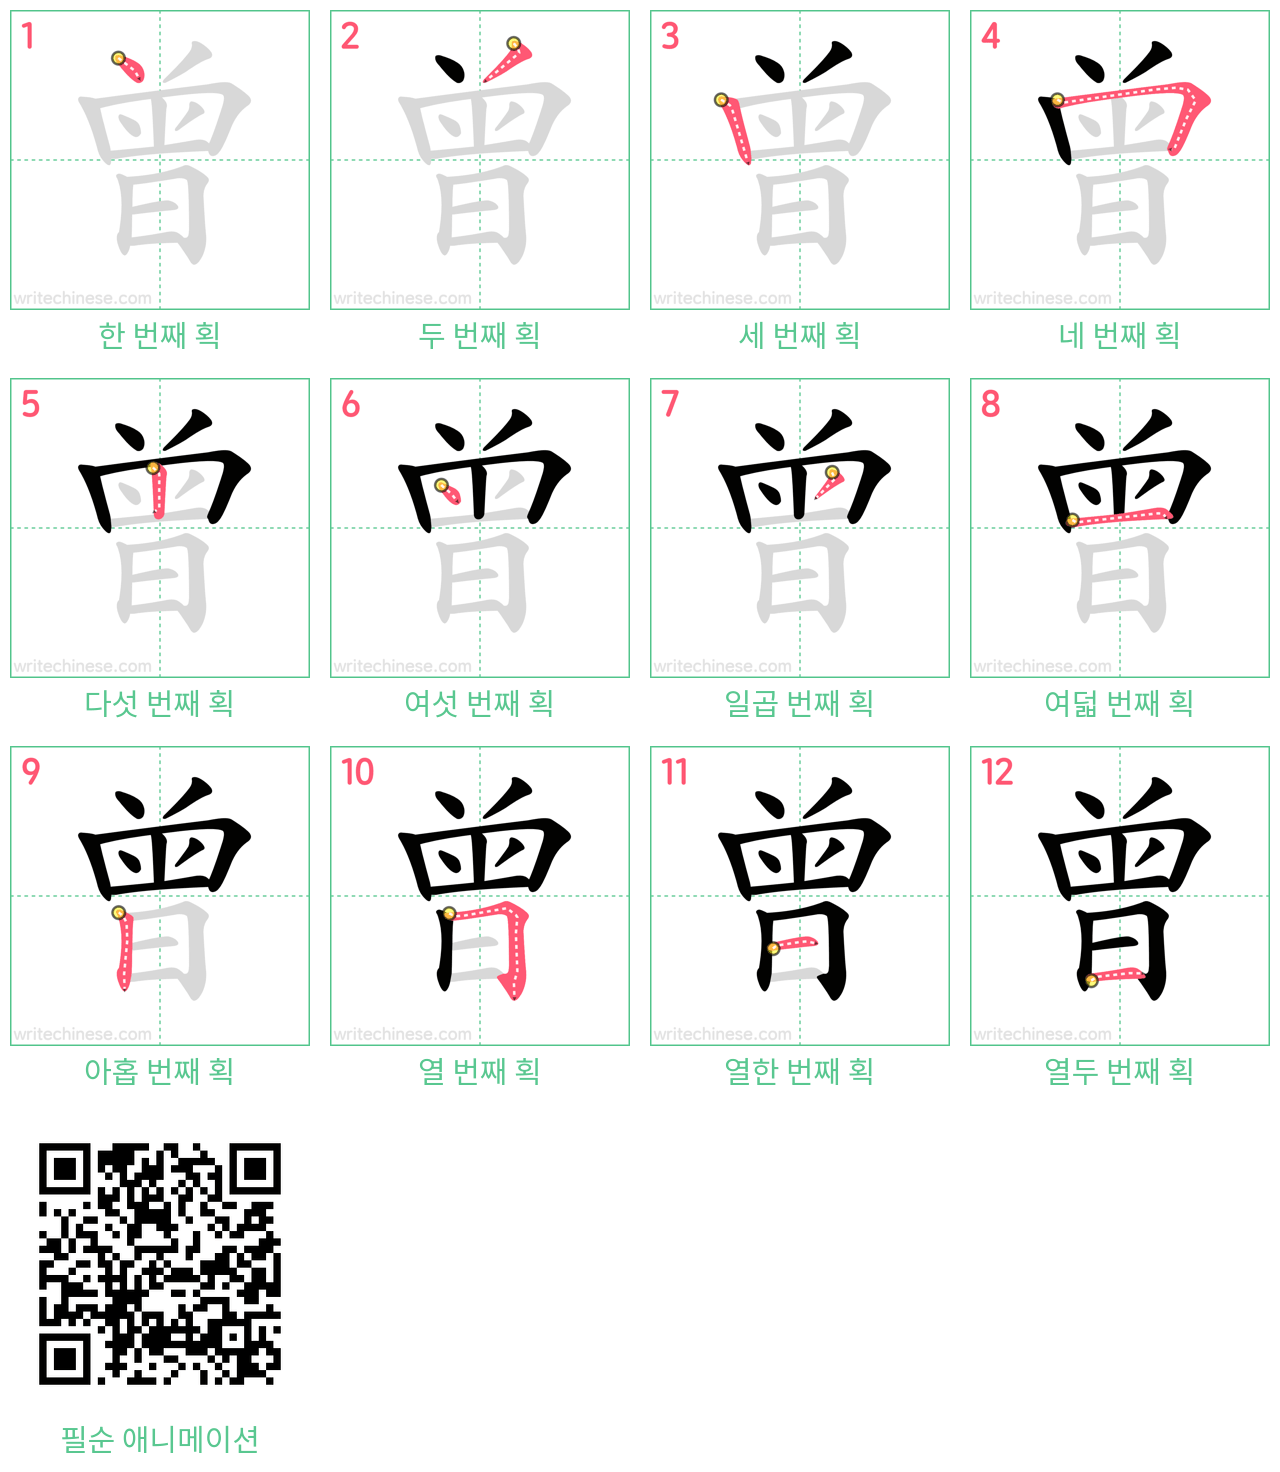 曾 step-by-step stroke order diagrams